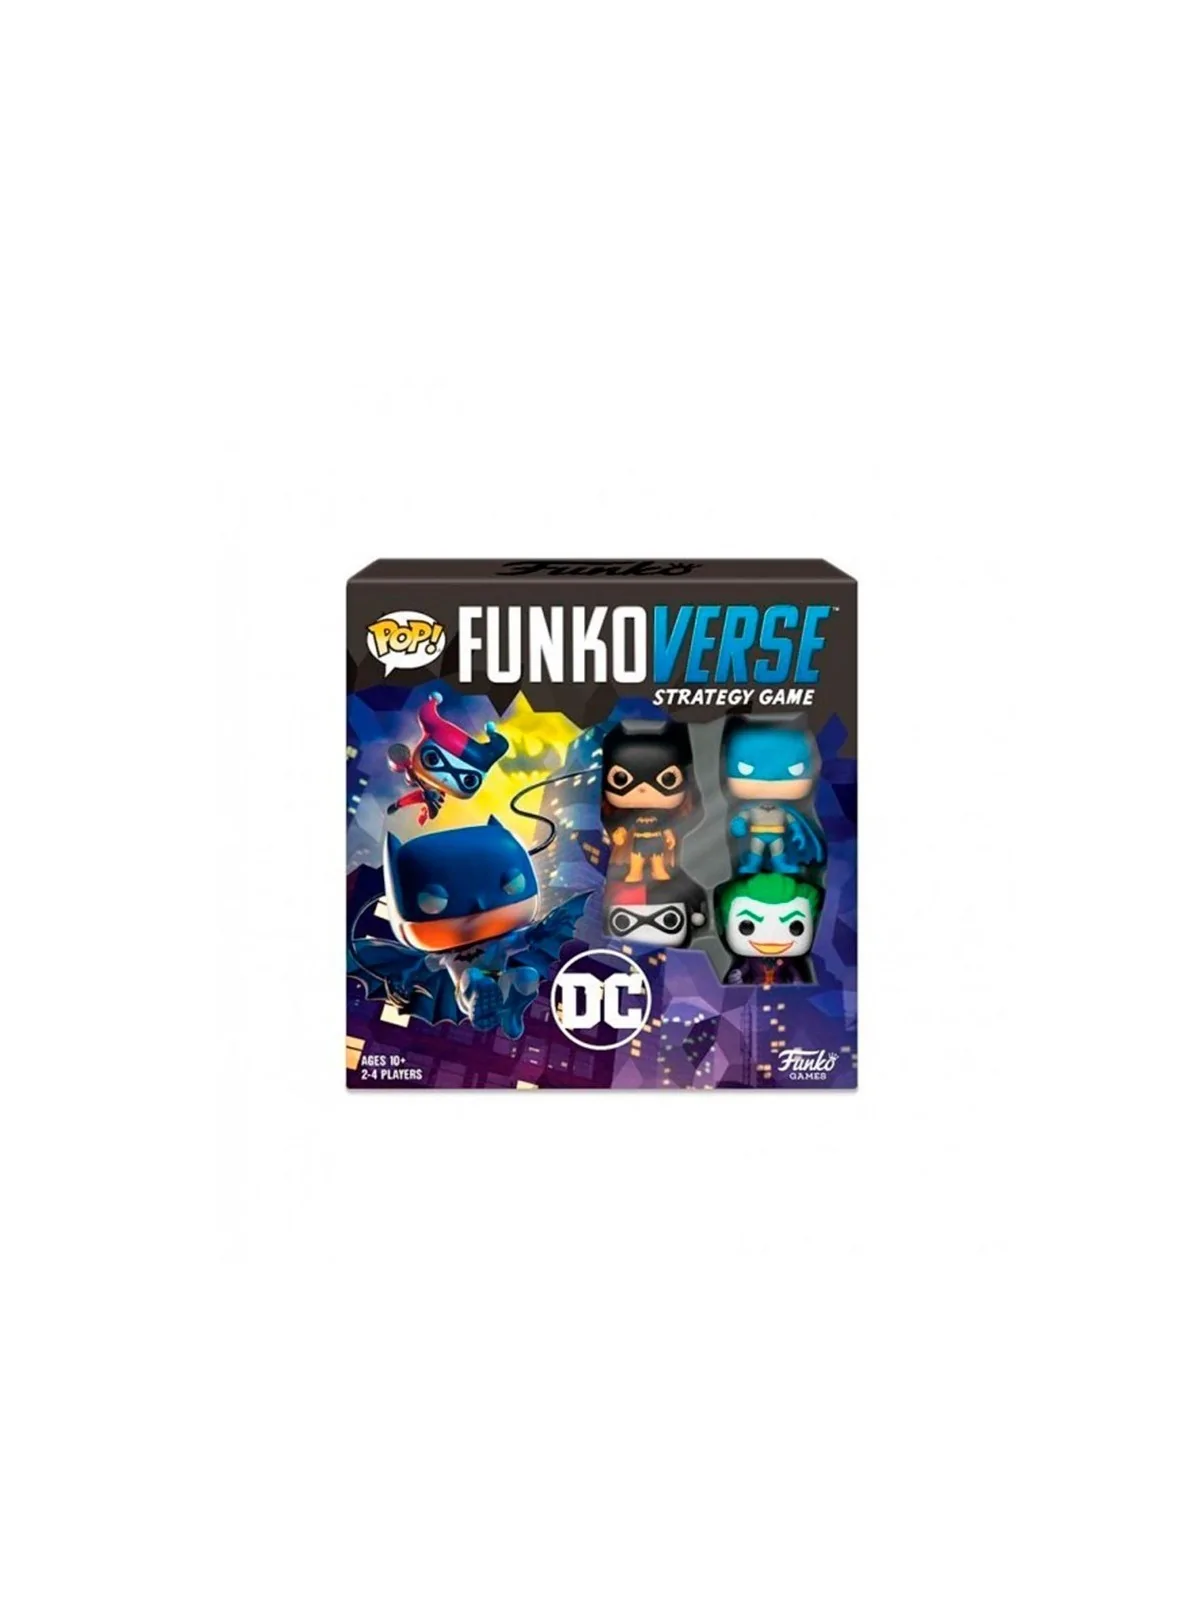 Comprar Funkoverse Strategy Game - DC Comics 4 Figuras barato al mejor